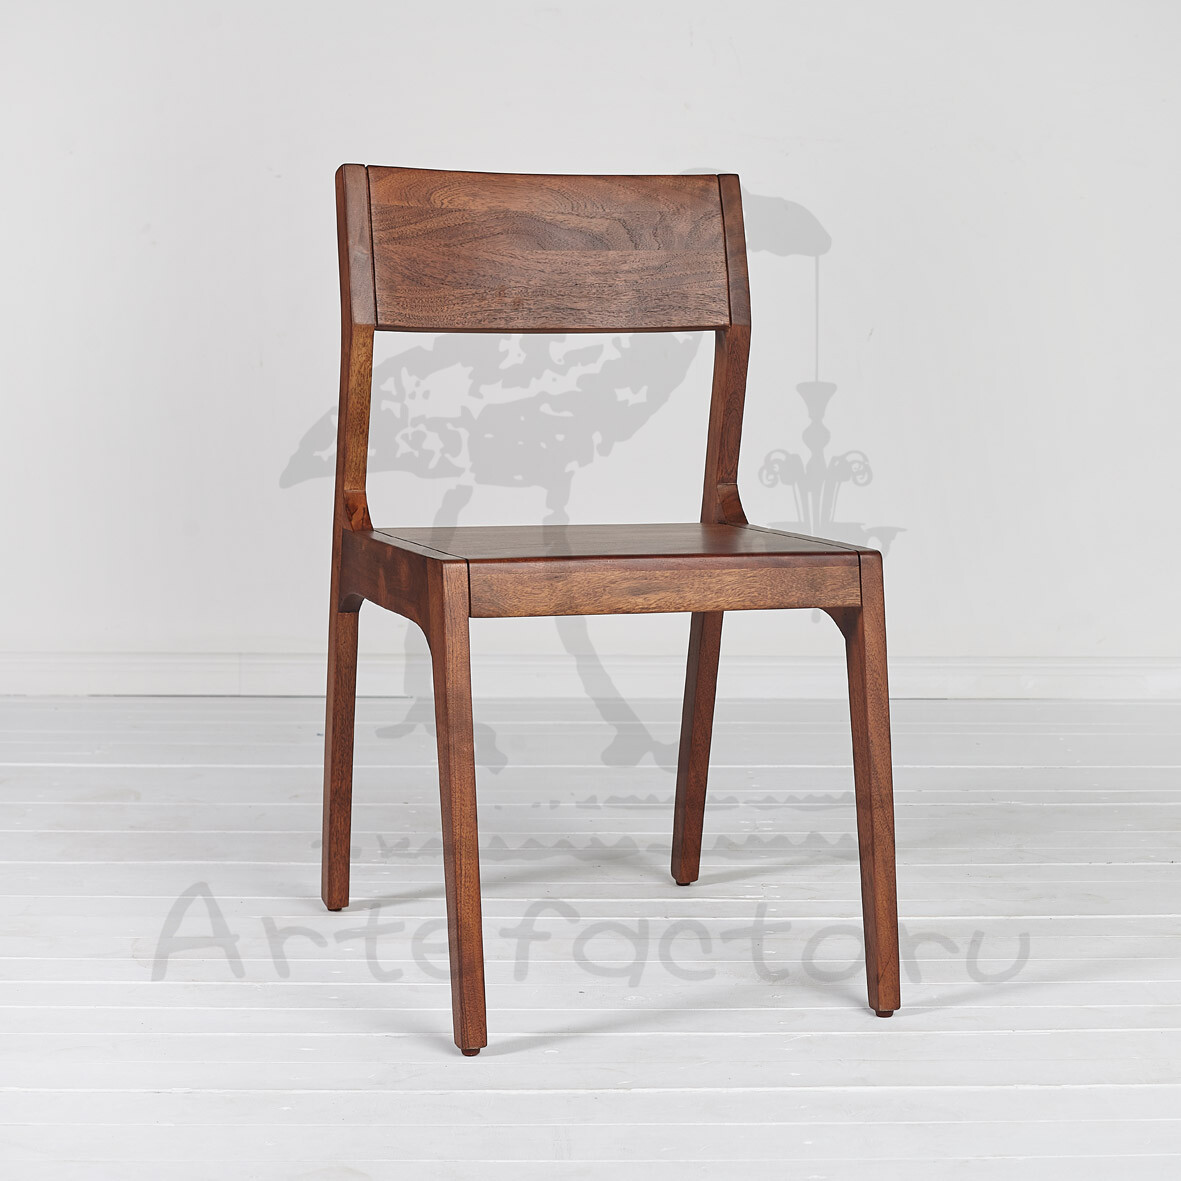 Обеденный минималистичный стул из массива акации